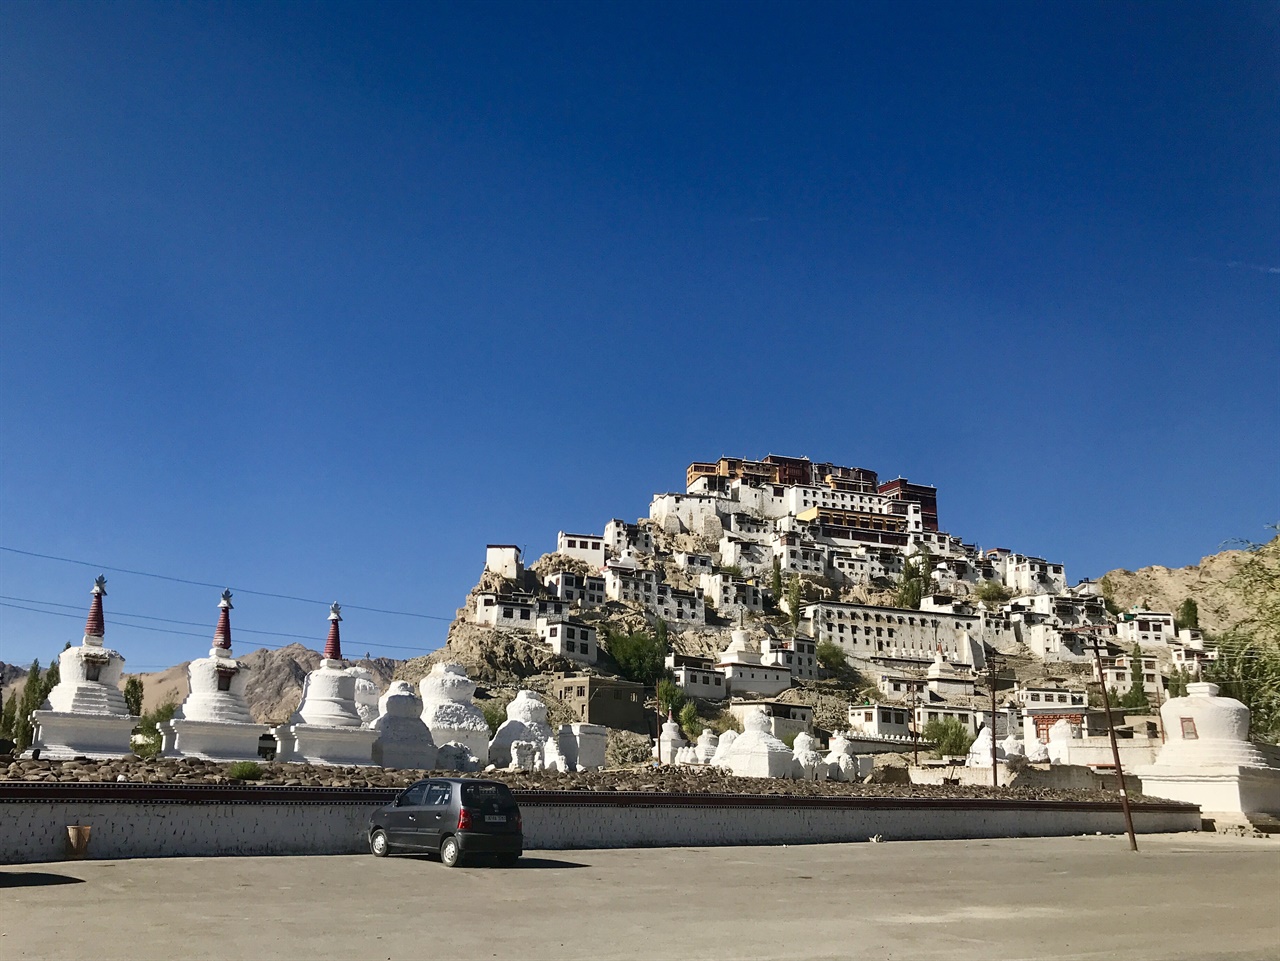 라다크의 중심지 레(Leh)에서 한 시간 정도 떨어진 곳에 자리한 불교사원, 틱세 곰파